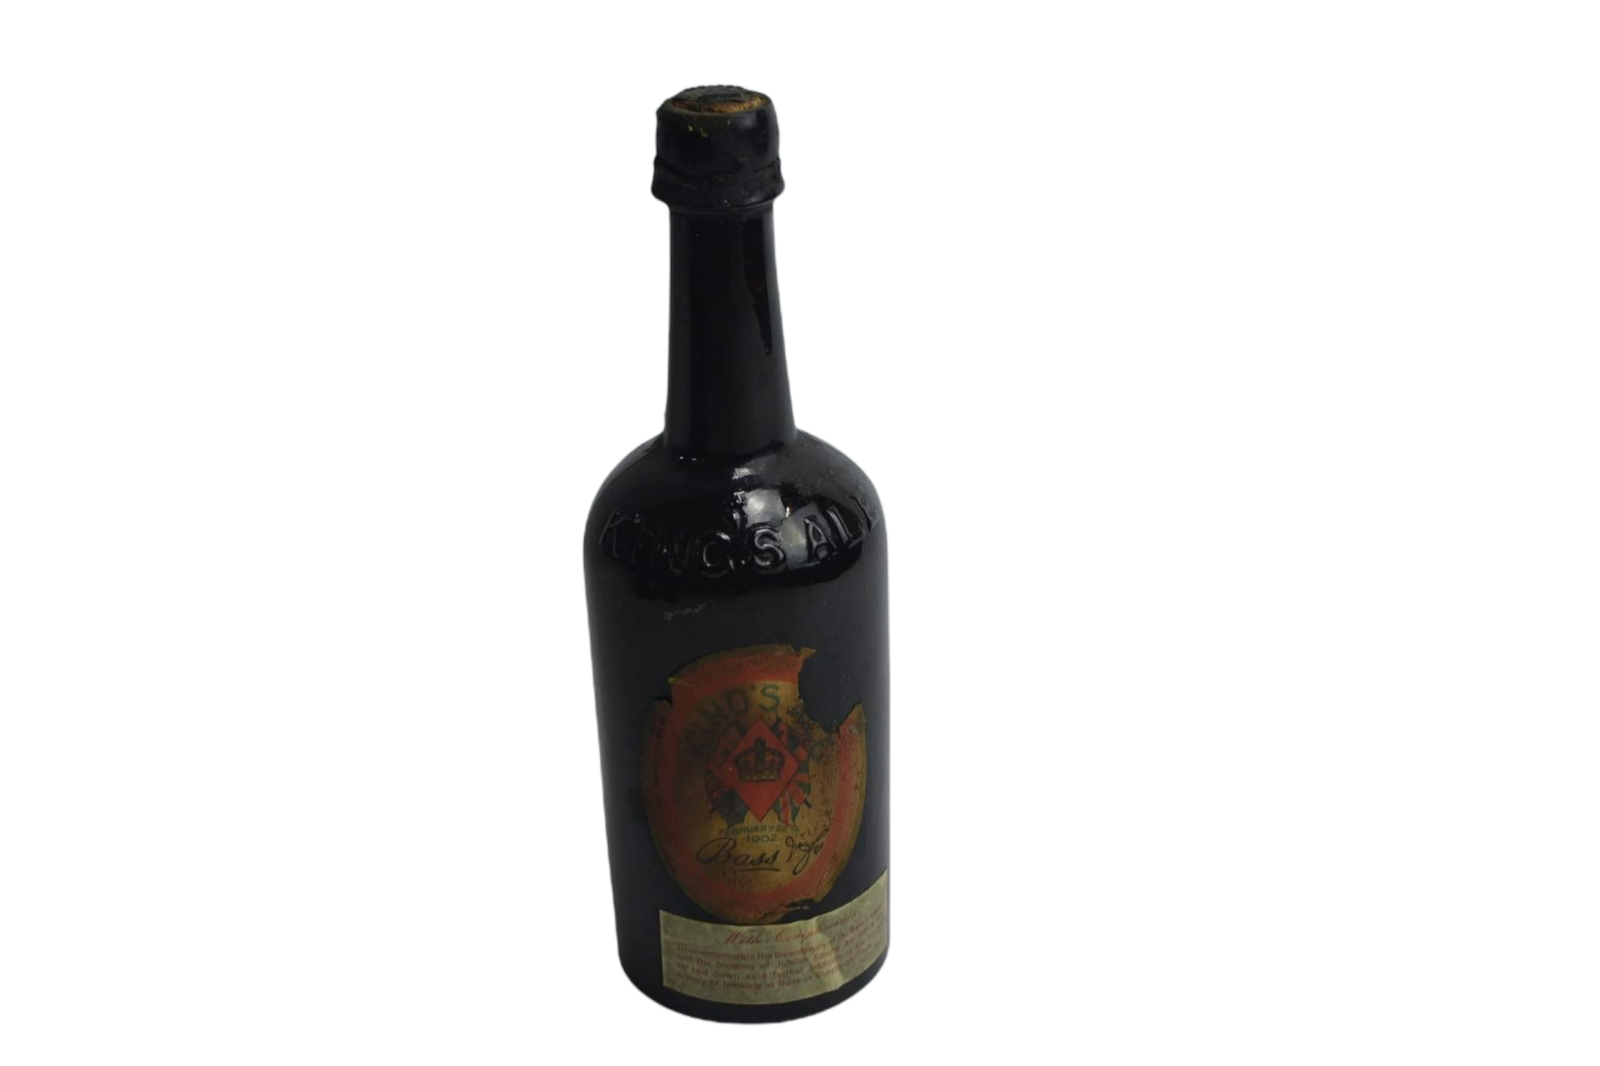 1902 Kings Ale Pint Bottle